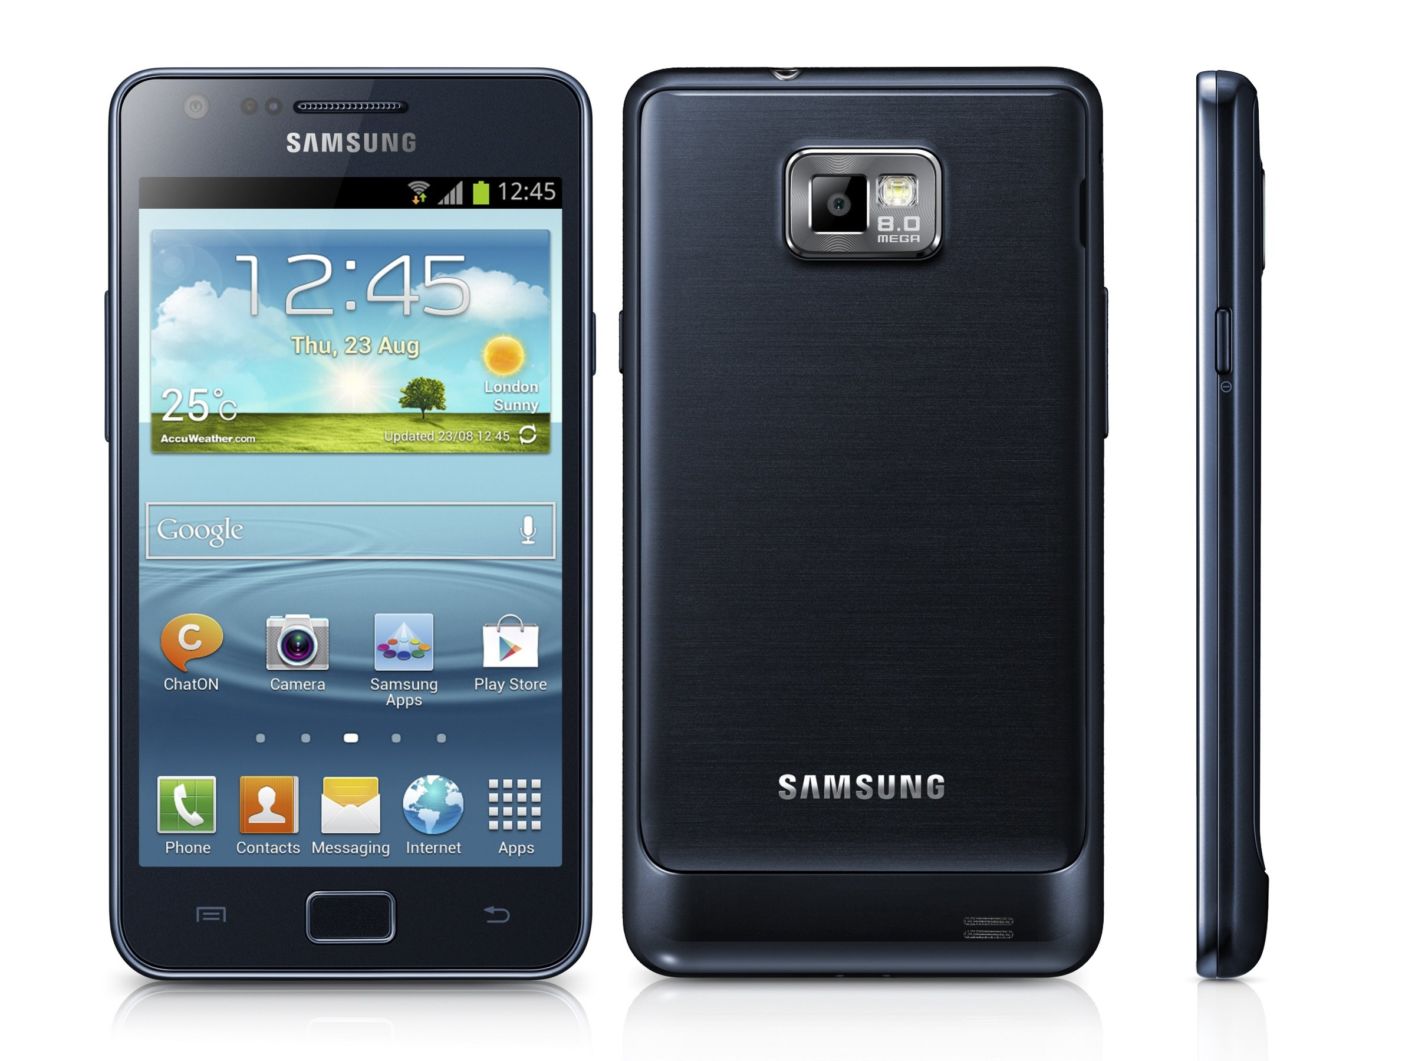 Samsung-Galaxy-S2